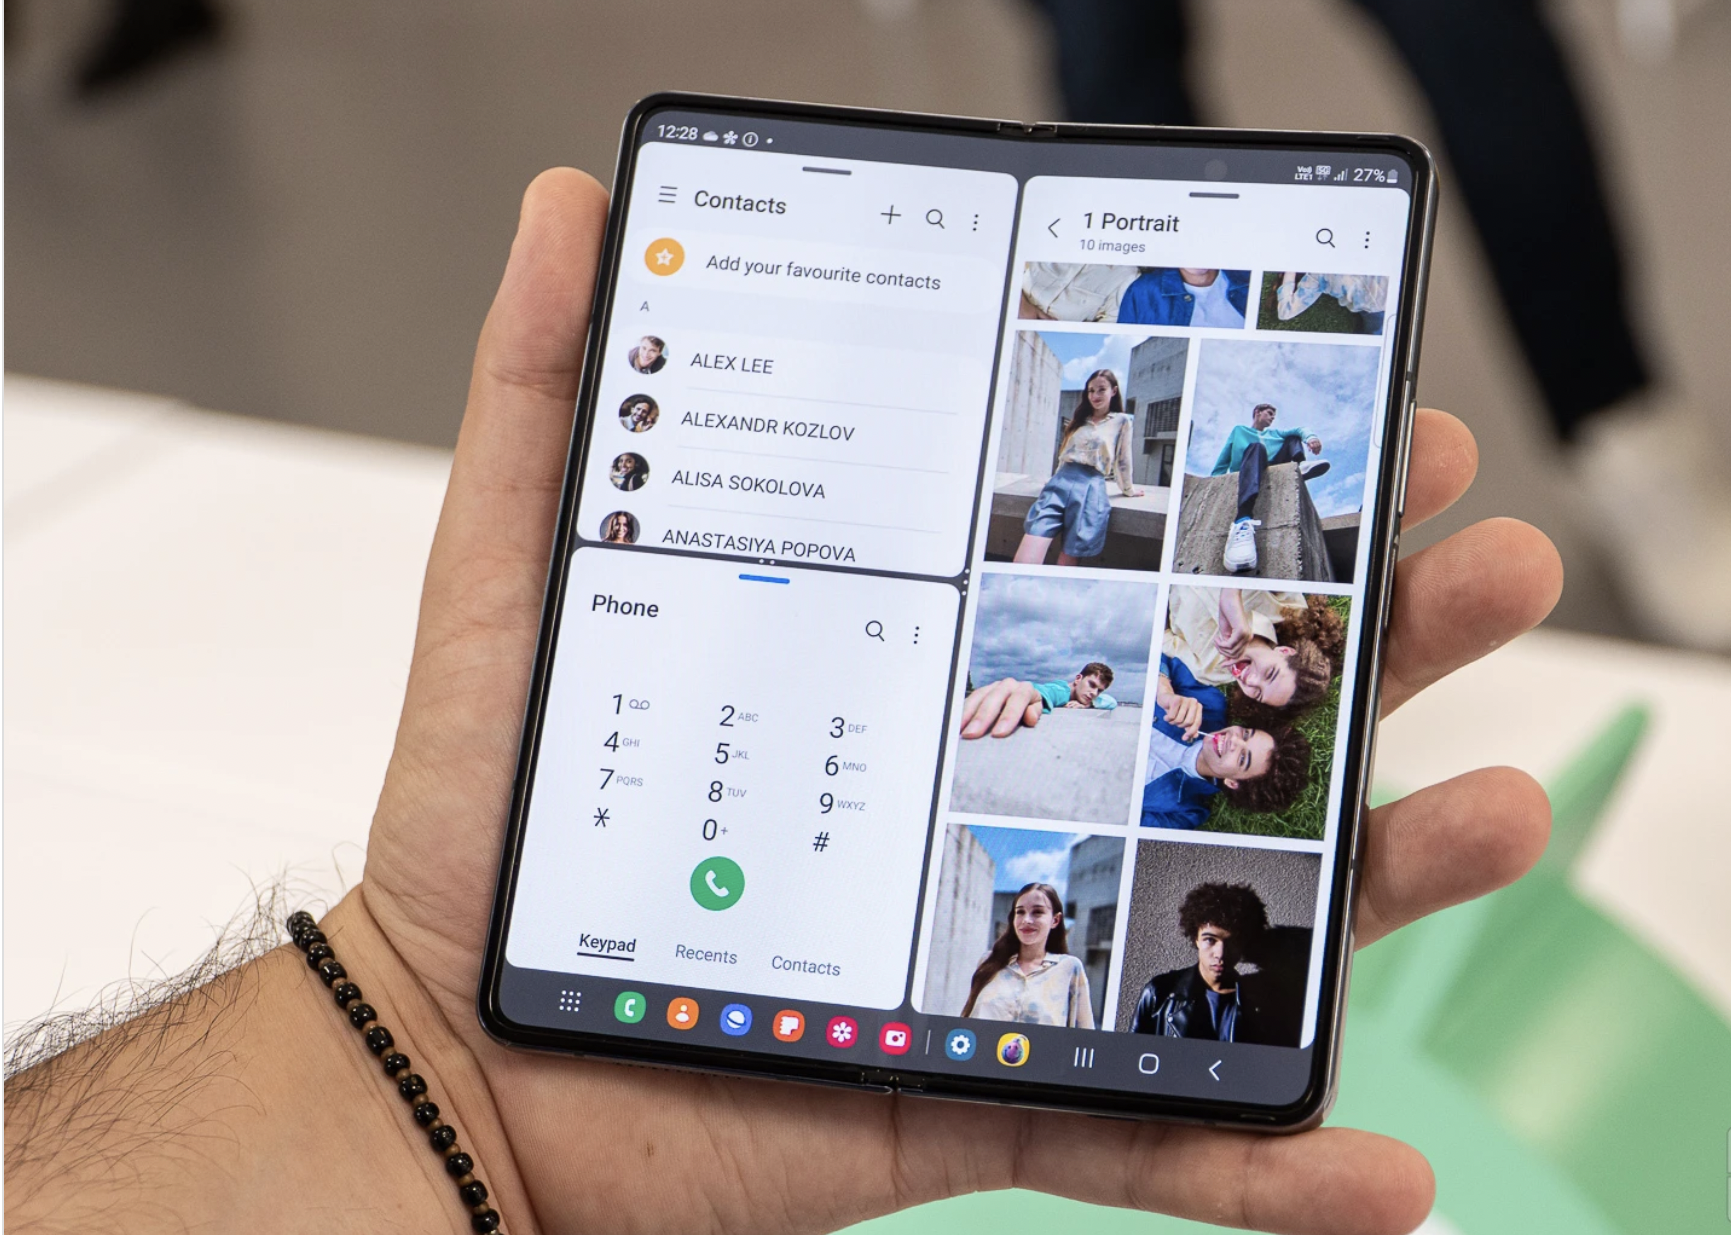 Galaxy Z Fold 4: Bạn muốn biết chiếc điện thoại Galaxy Z Fold 4 của Samsung có gì đặc biệt? Hãy xem những hình ảnh liên quan đến chiếc điện thoại này để khám phá những tính năng hấp dẫn và thiết kế độc đáo của nó.